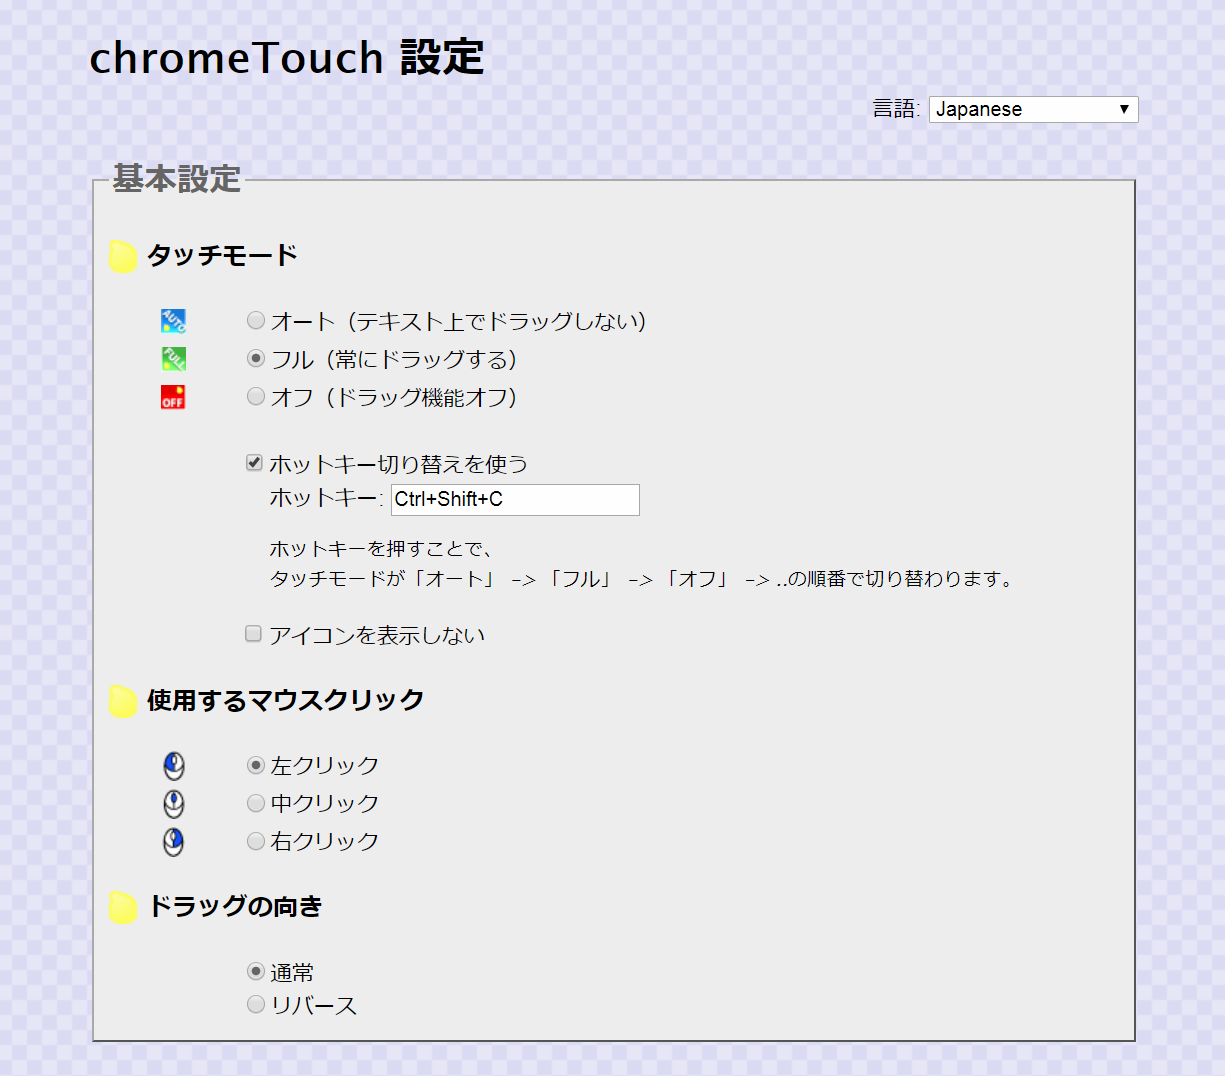 日本語化されているchromeTouchの設定画面